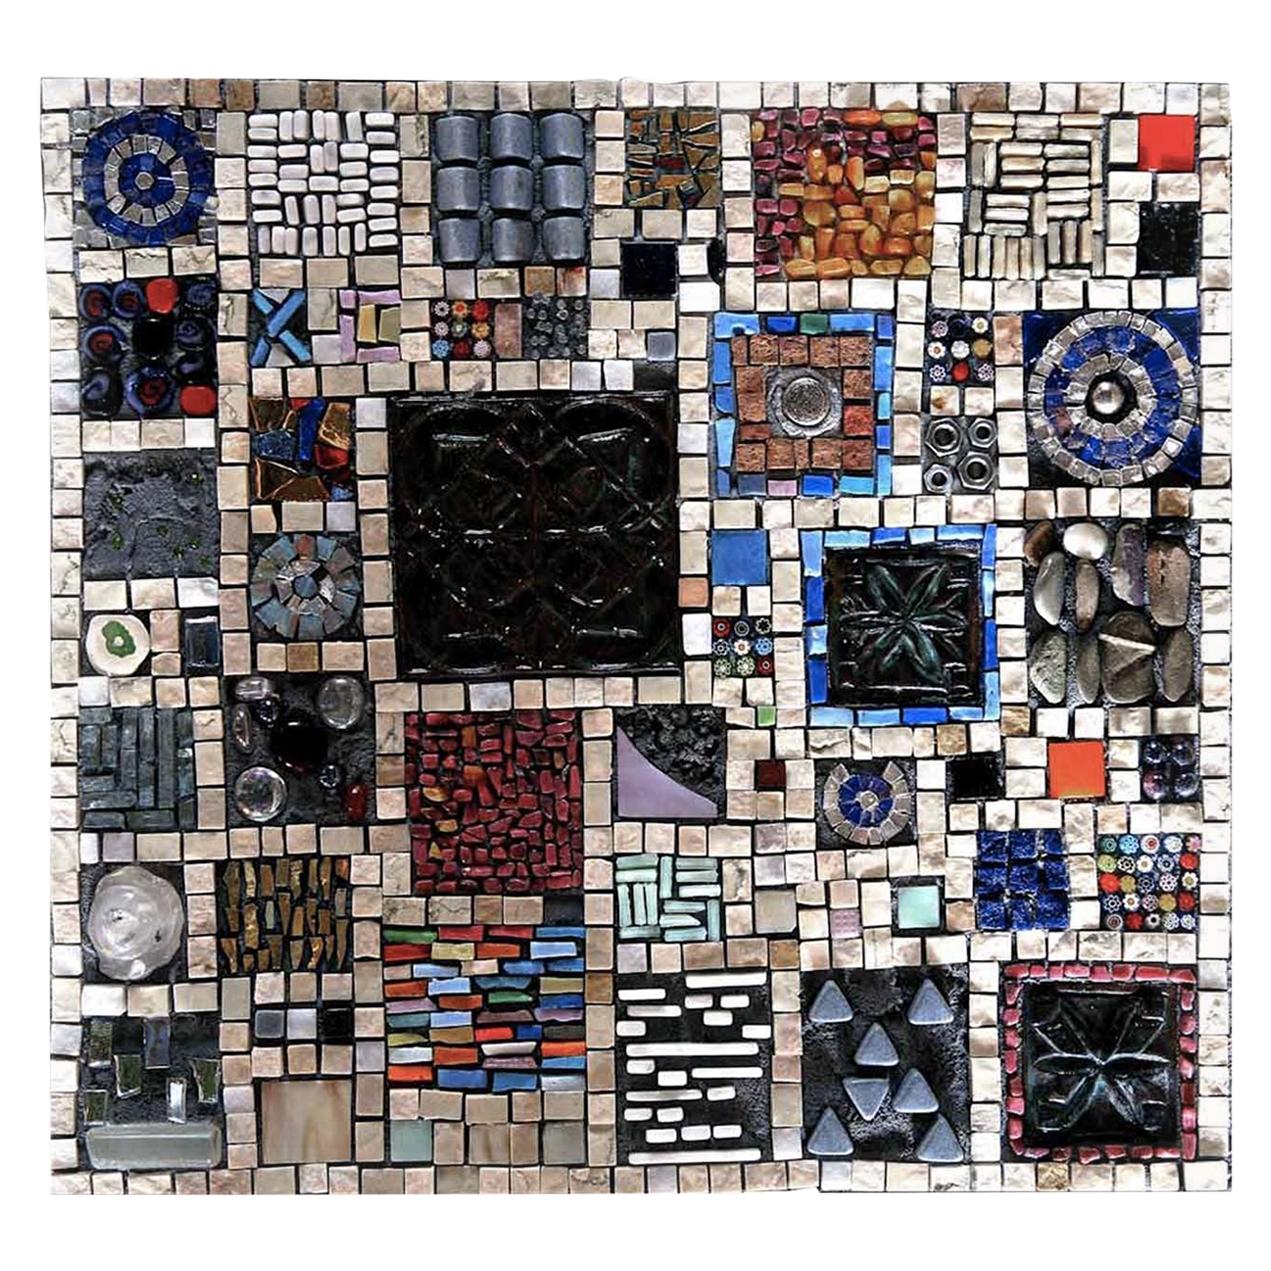 Orto Mosaic by Mosaici Ursula Corsi